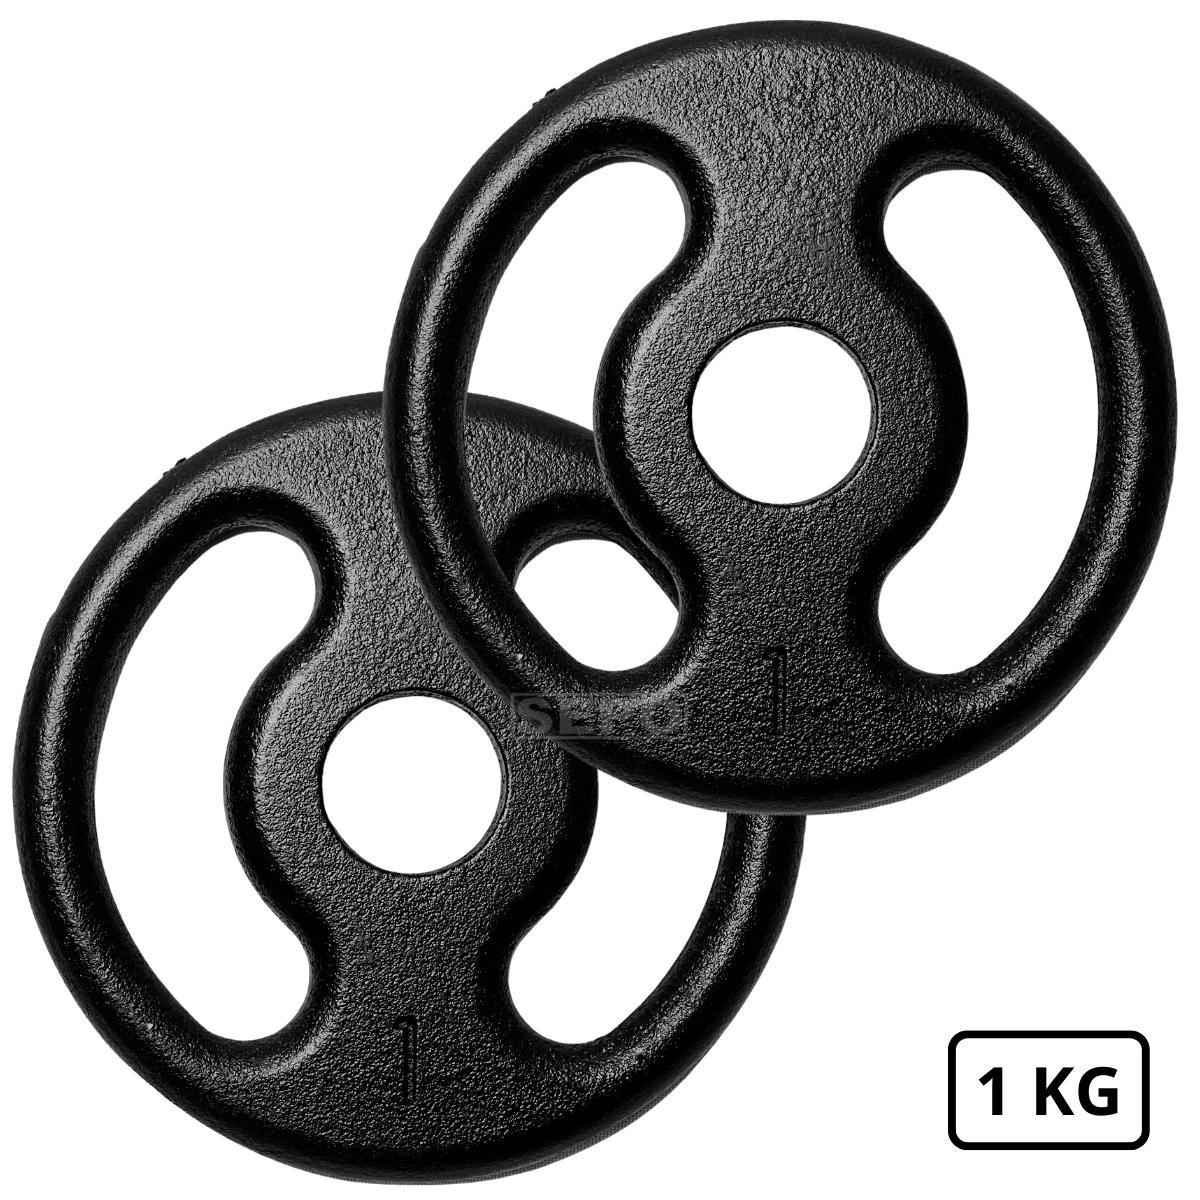 Kit com 12Kg em Anilhas Ferro Fundido Pares de 1, 2 e 3Kg - Loja Portal